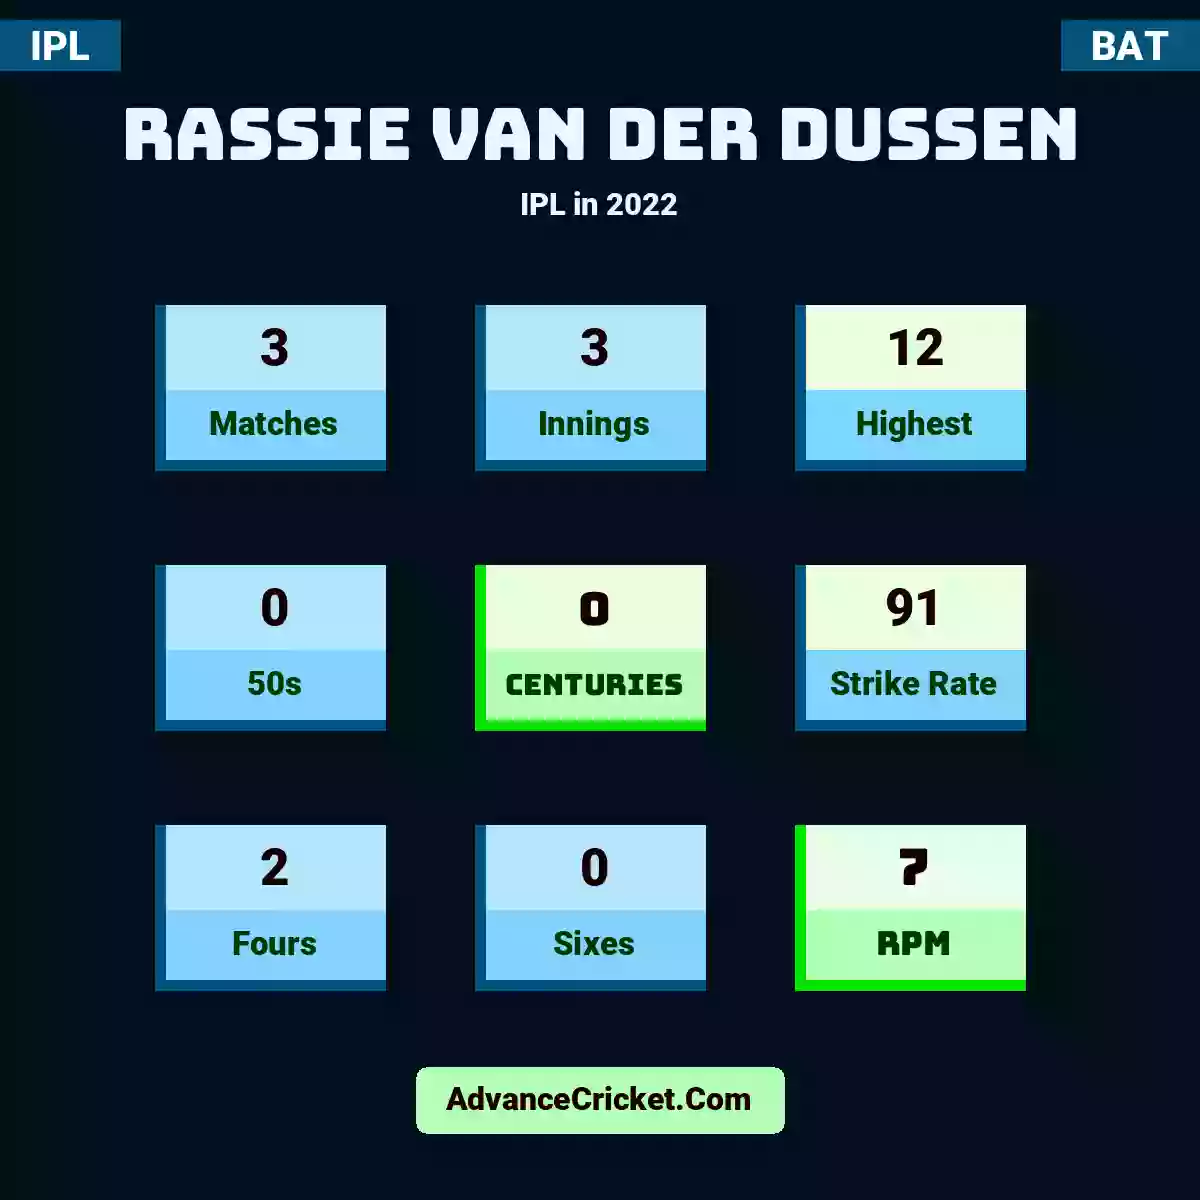 Rassie van der Dussen IPL  in 2022, Rassie van der Dussen played 3 matches, scored 12 runs as highest, 0 half-centuries, and 0 centuries, with a strike rate of 91. R.Dussen hit 2 fours and 0 sixes, with an RPM of 7.